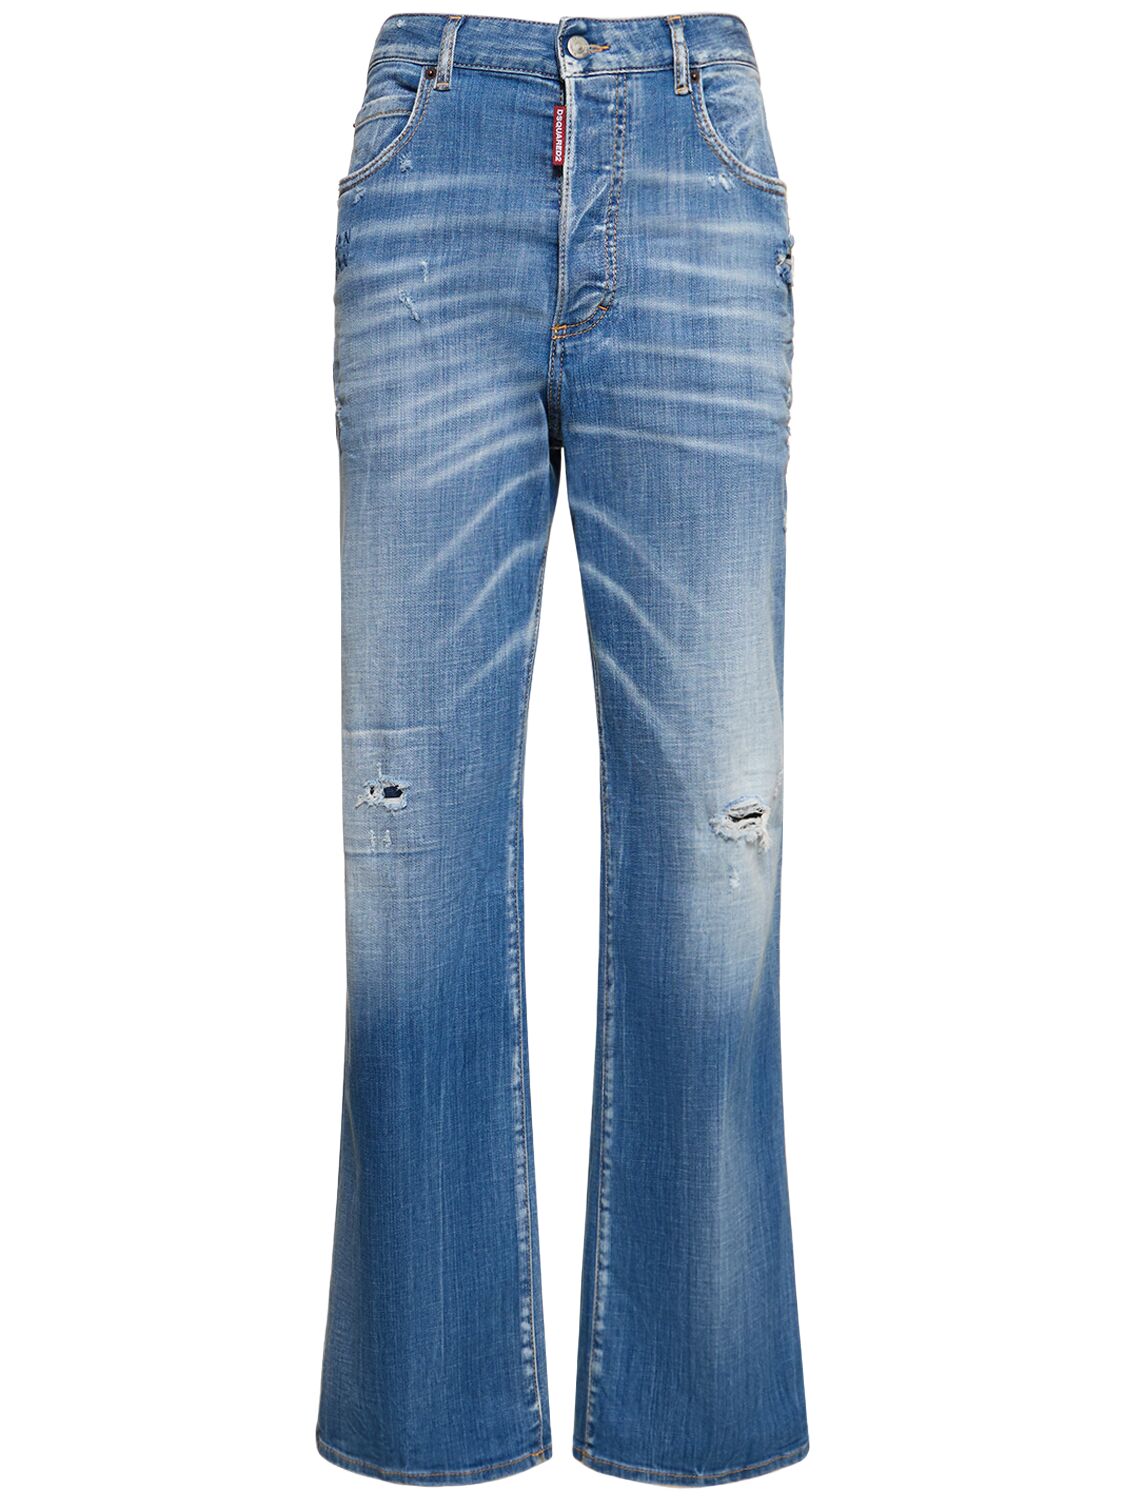 Roadie Distressed Mid-rise Wide Jeans